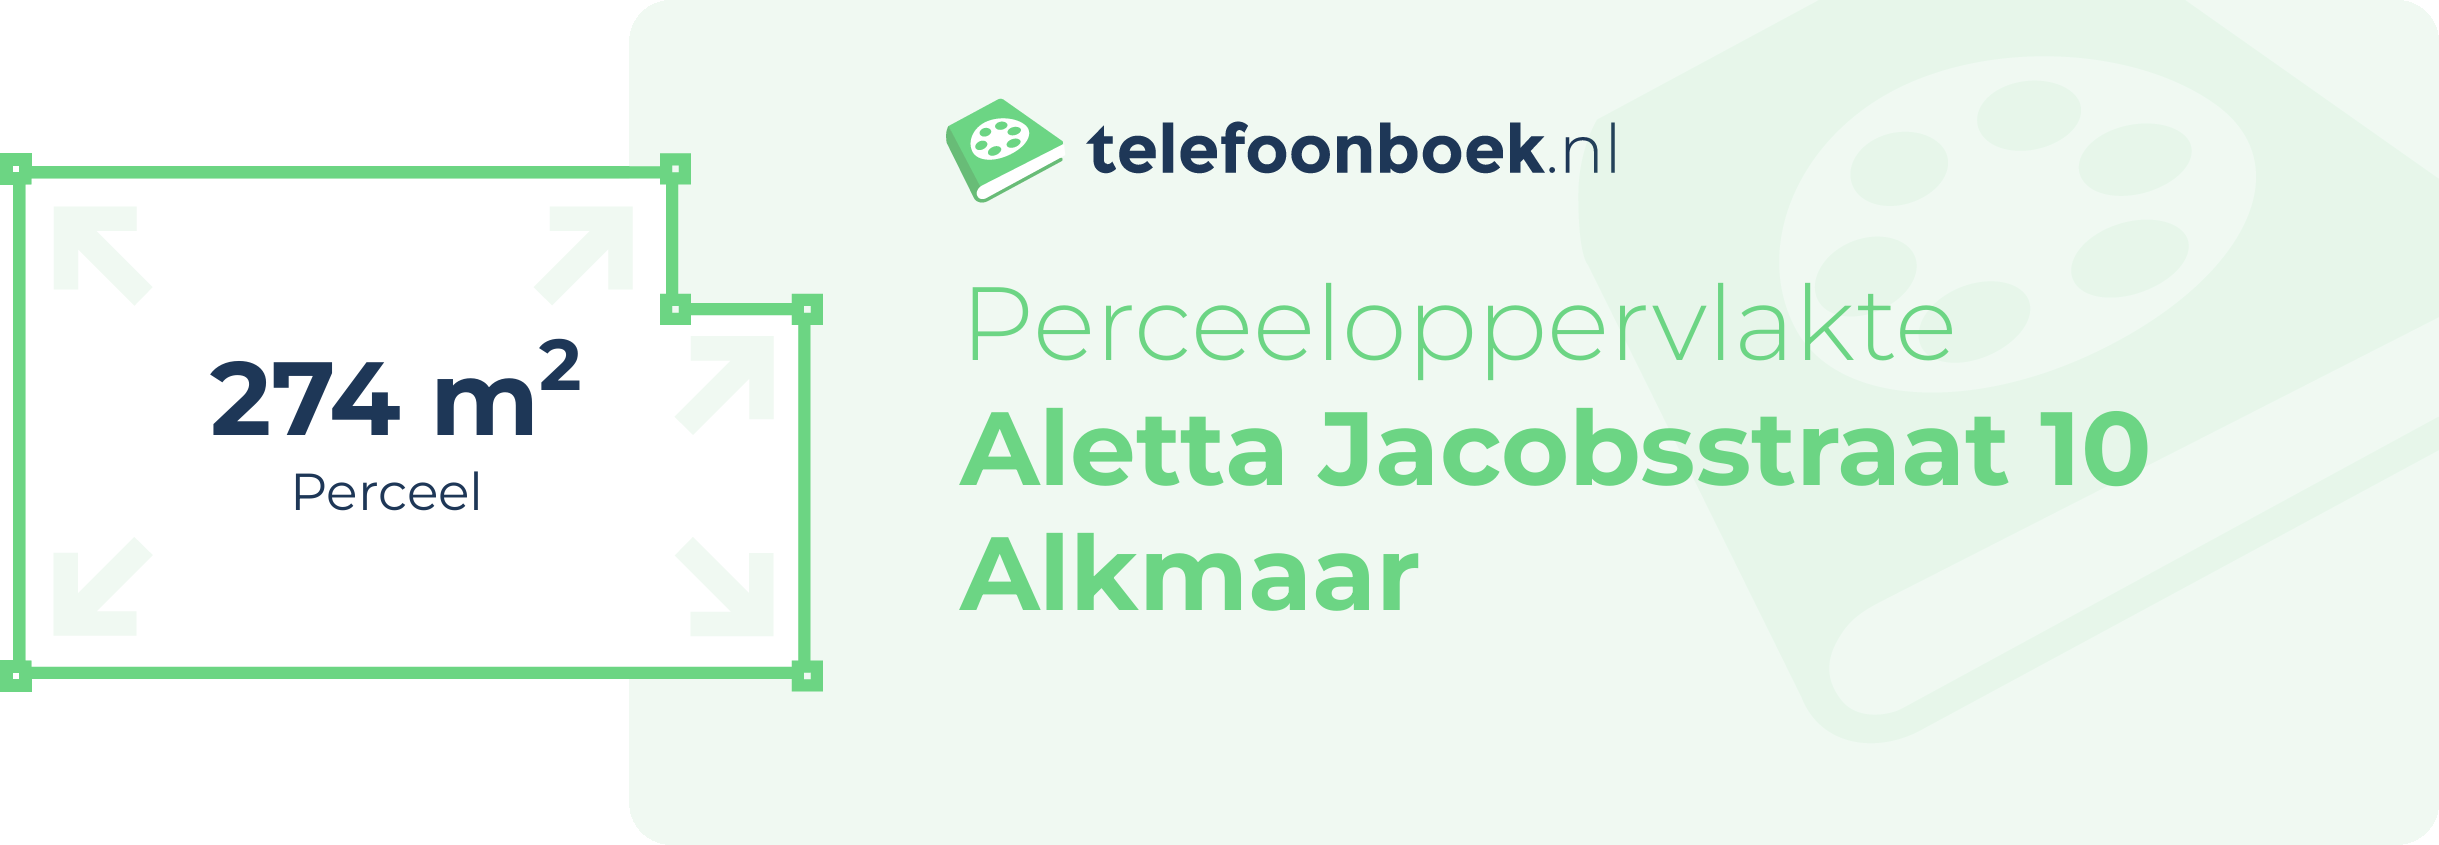 Perceeloppervlakte Aletta Jacobsstraat 10 Alkmaar